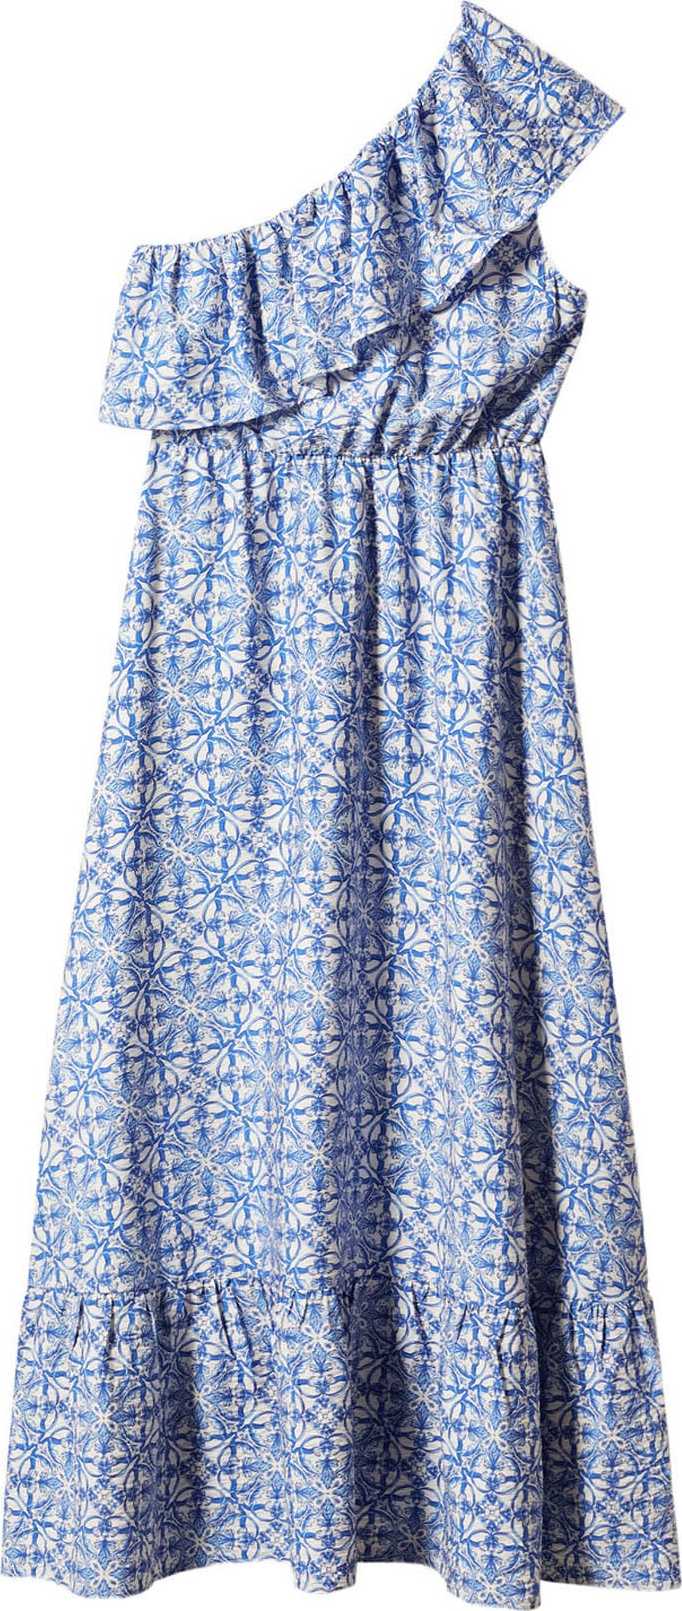 MANGO Letní šaty 'Linaje' nebeská modř / bílá